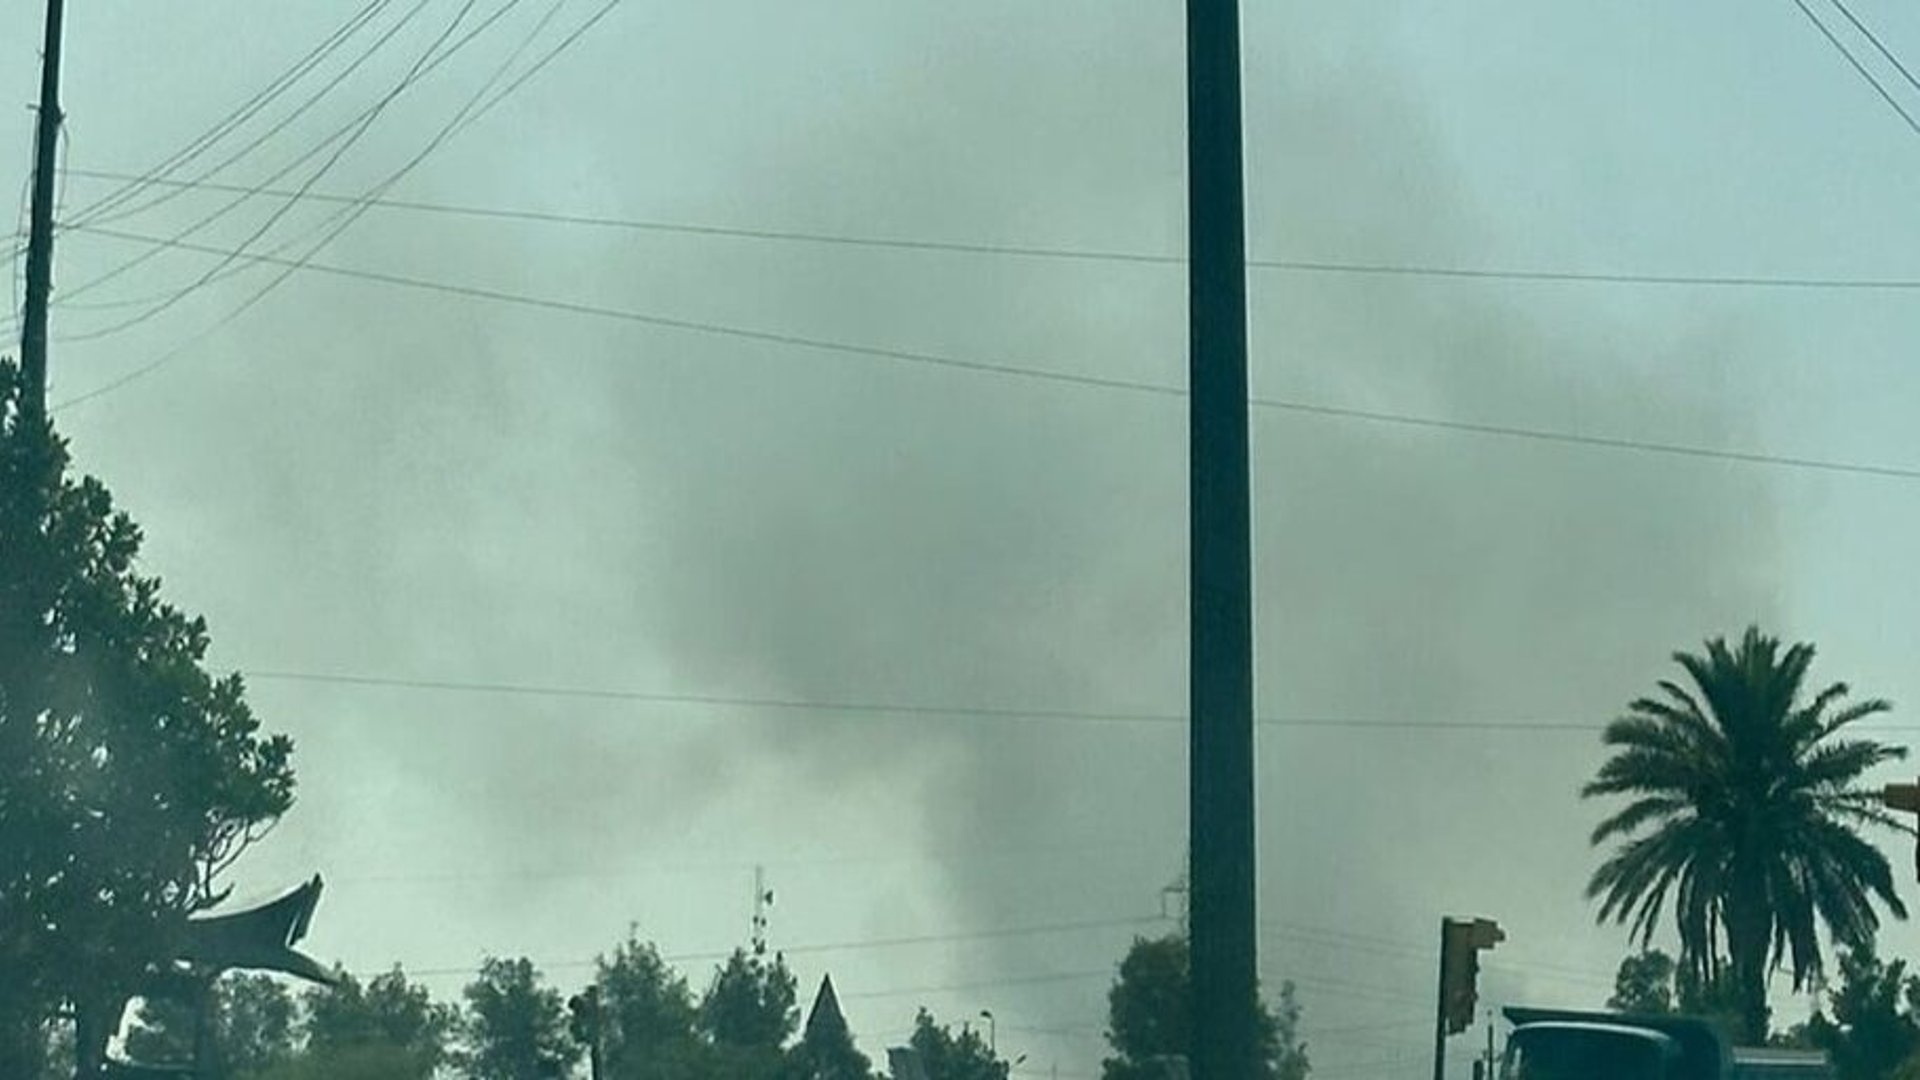 فرق الدفاع المدني توجهت لإخماد حريق اندلع بمحيط مطار بغداد الدولي